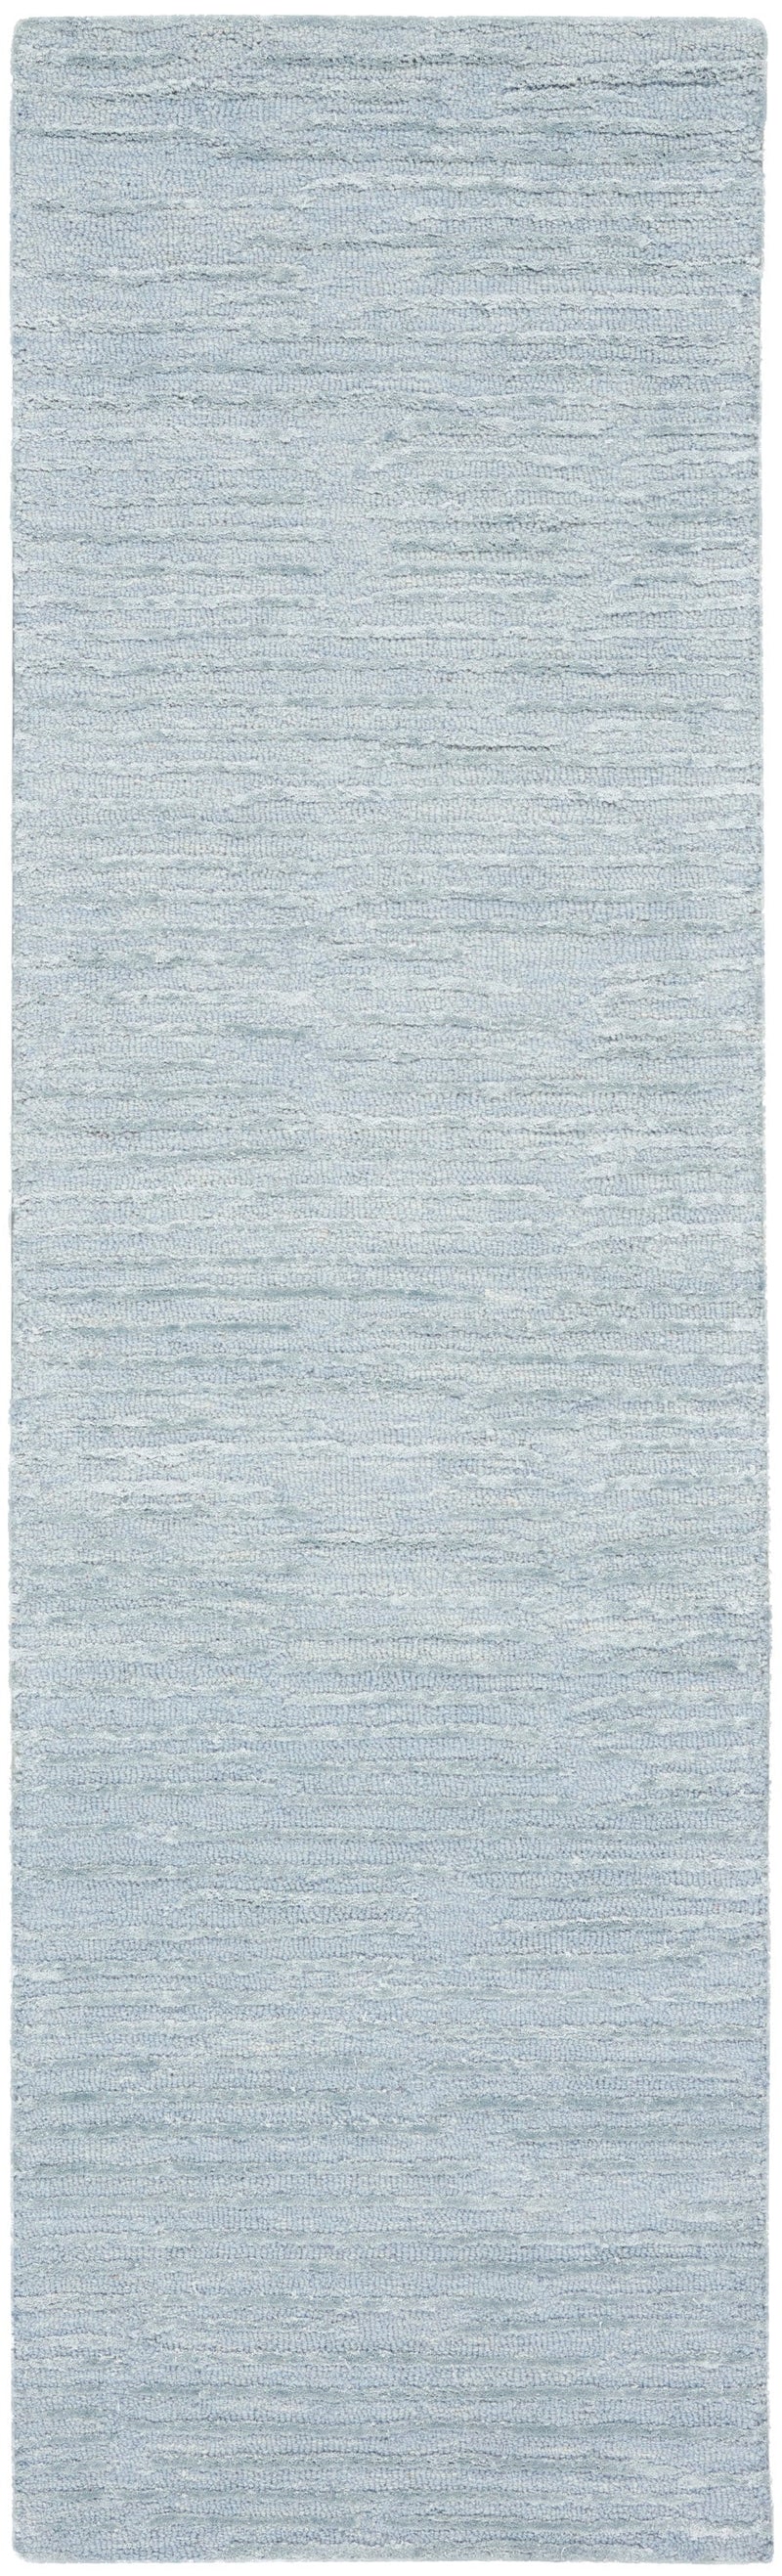 media image for ck010 linear handmade light blue rug by nourison 99446879950 redo 2 219